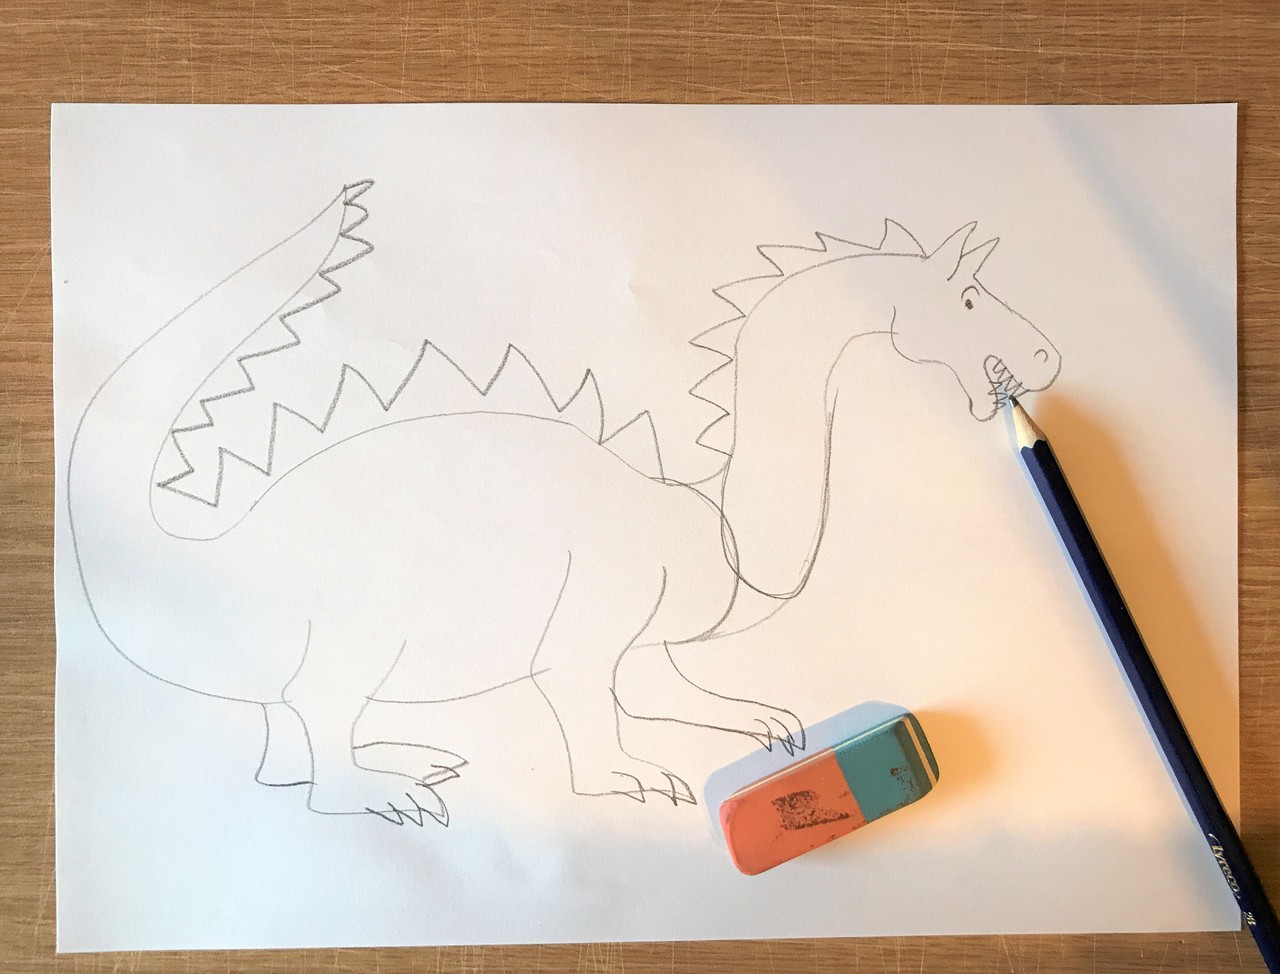 Das Foto zeigt eine Bleistiftzeichnung von einem Drachen. Er ist auf einem weißen Blatt Papier gezeichnet. Er hat einen zackigen Schuppenkamm, der sich von seinem Kopf bis zu seinem Schwanz zieht. Auf dem Blatt Papier liegen ein Bleistift und ein Radiergummi.